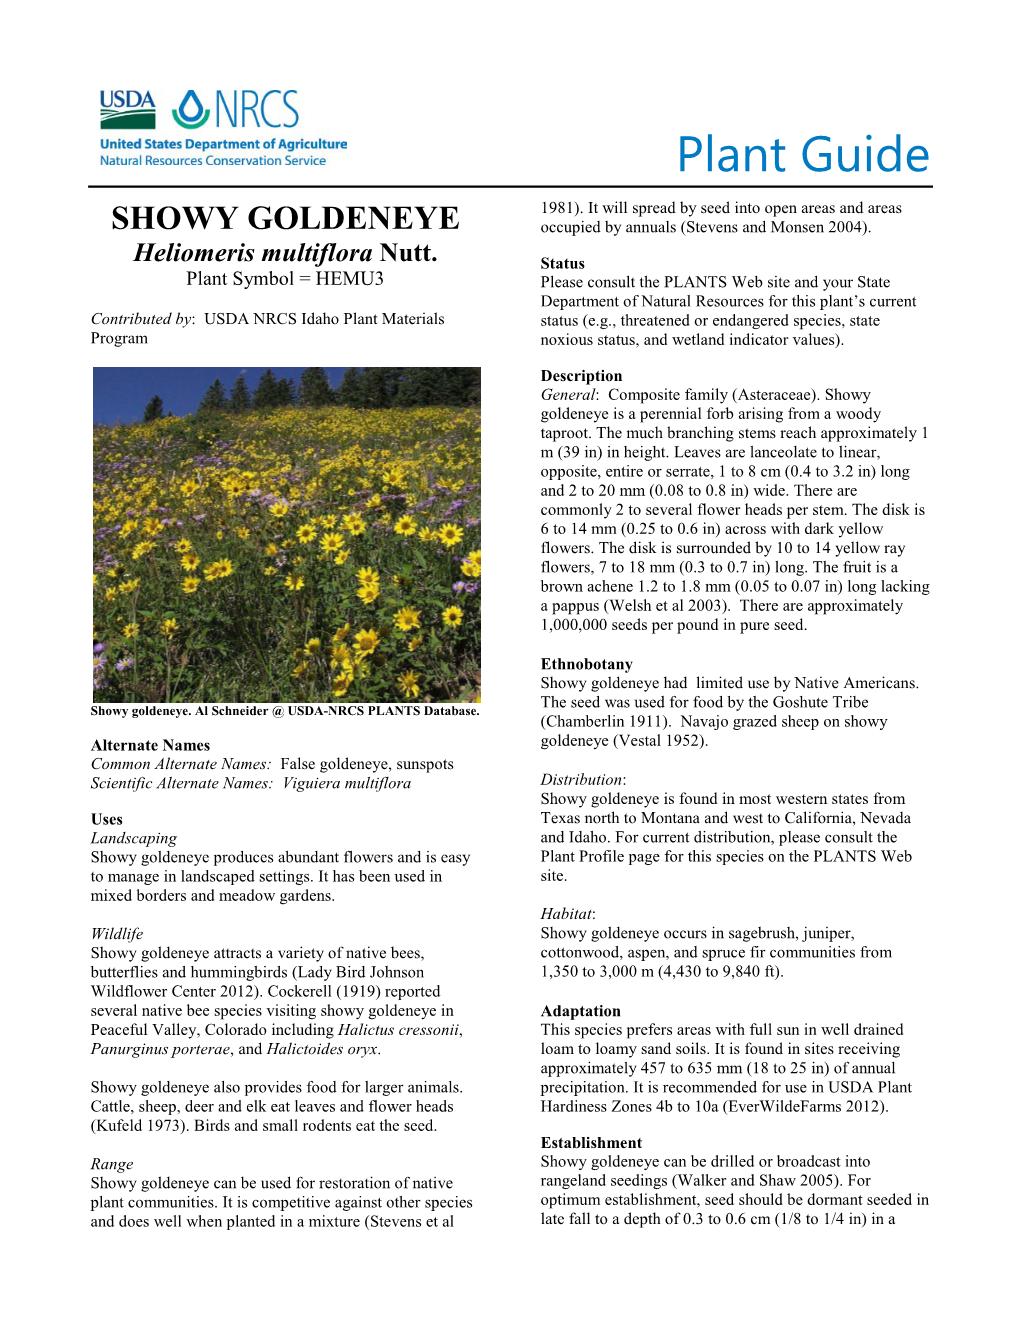 Plant Guide for Showy Goldeneye (Heliomeris Multiflora)